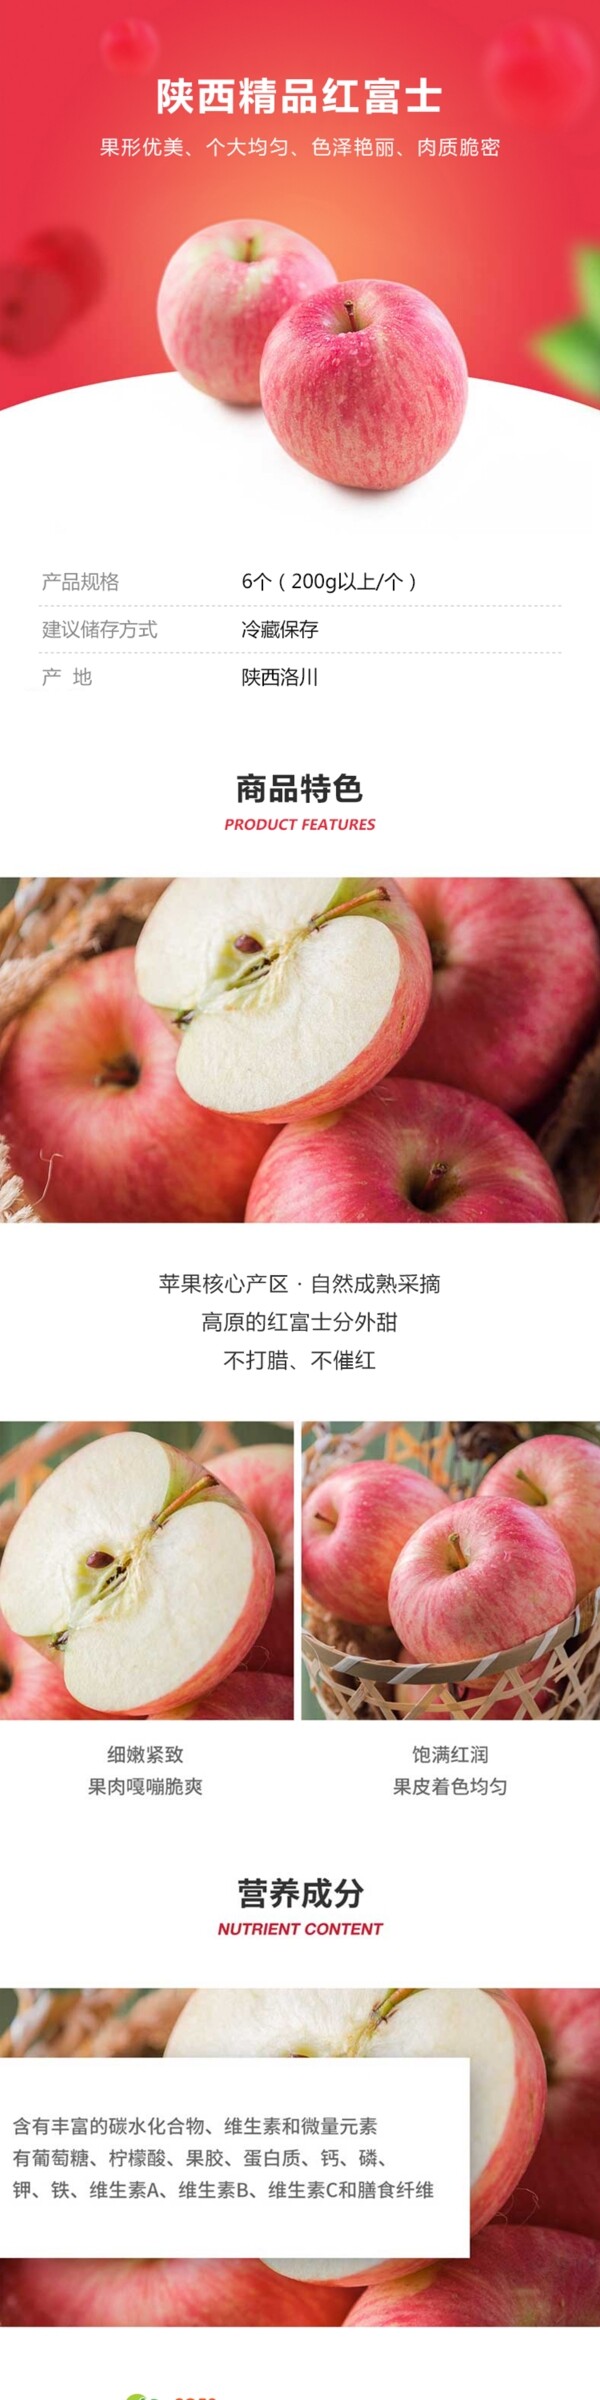 苹果红富士社区团产品详情模板